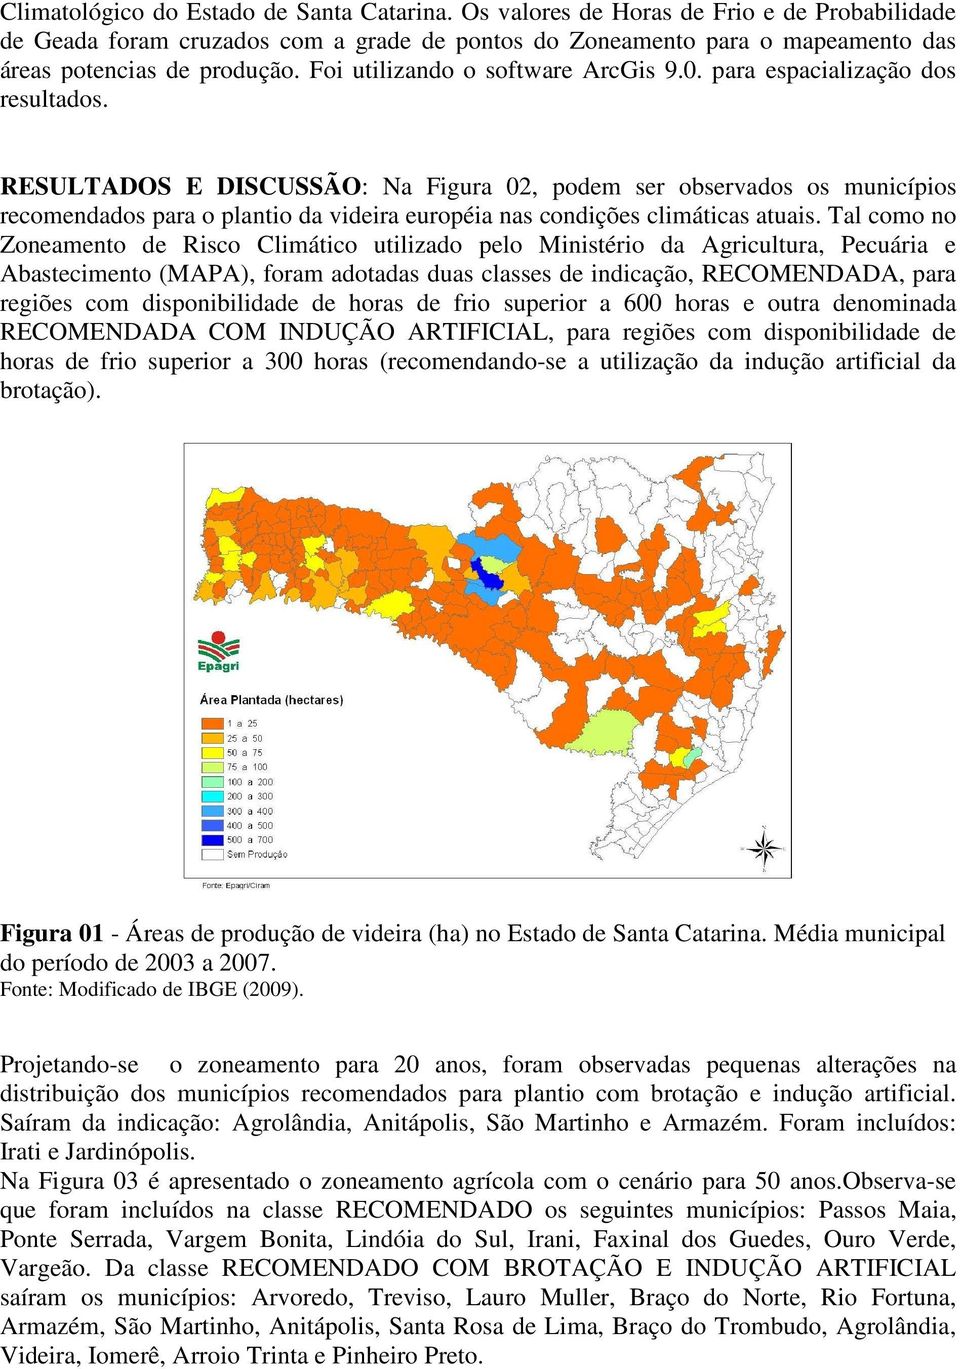 RESULTADOS E DISCUSSÃO: Na Figura 02, podem ser observados os municípios recomendados para o plantio da videira européia nas condições climáticas atuais.